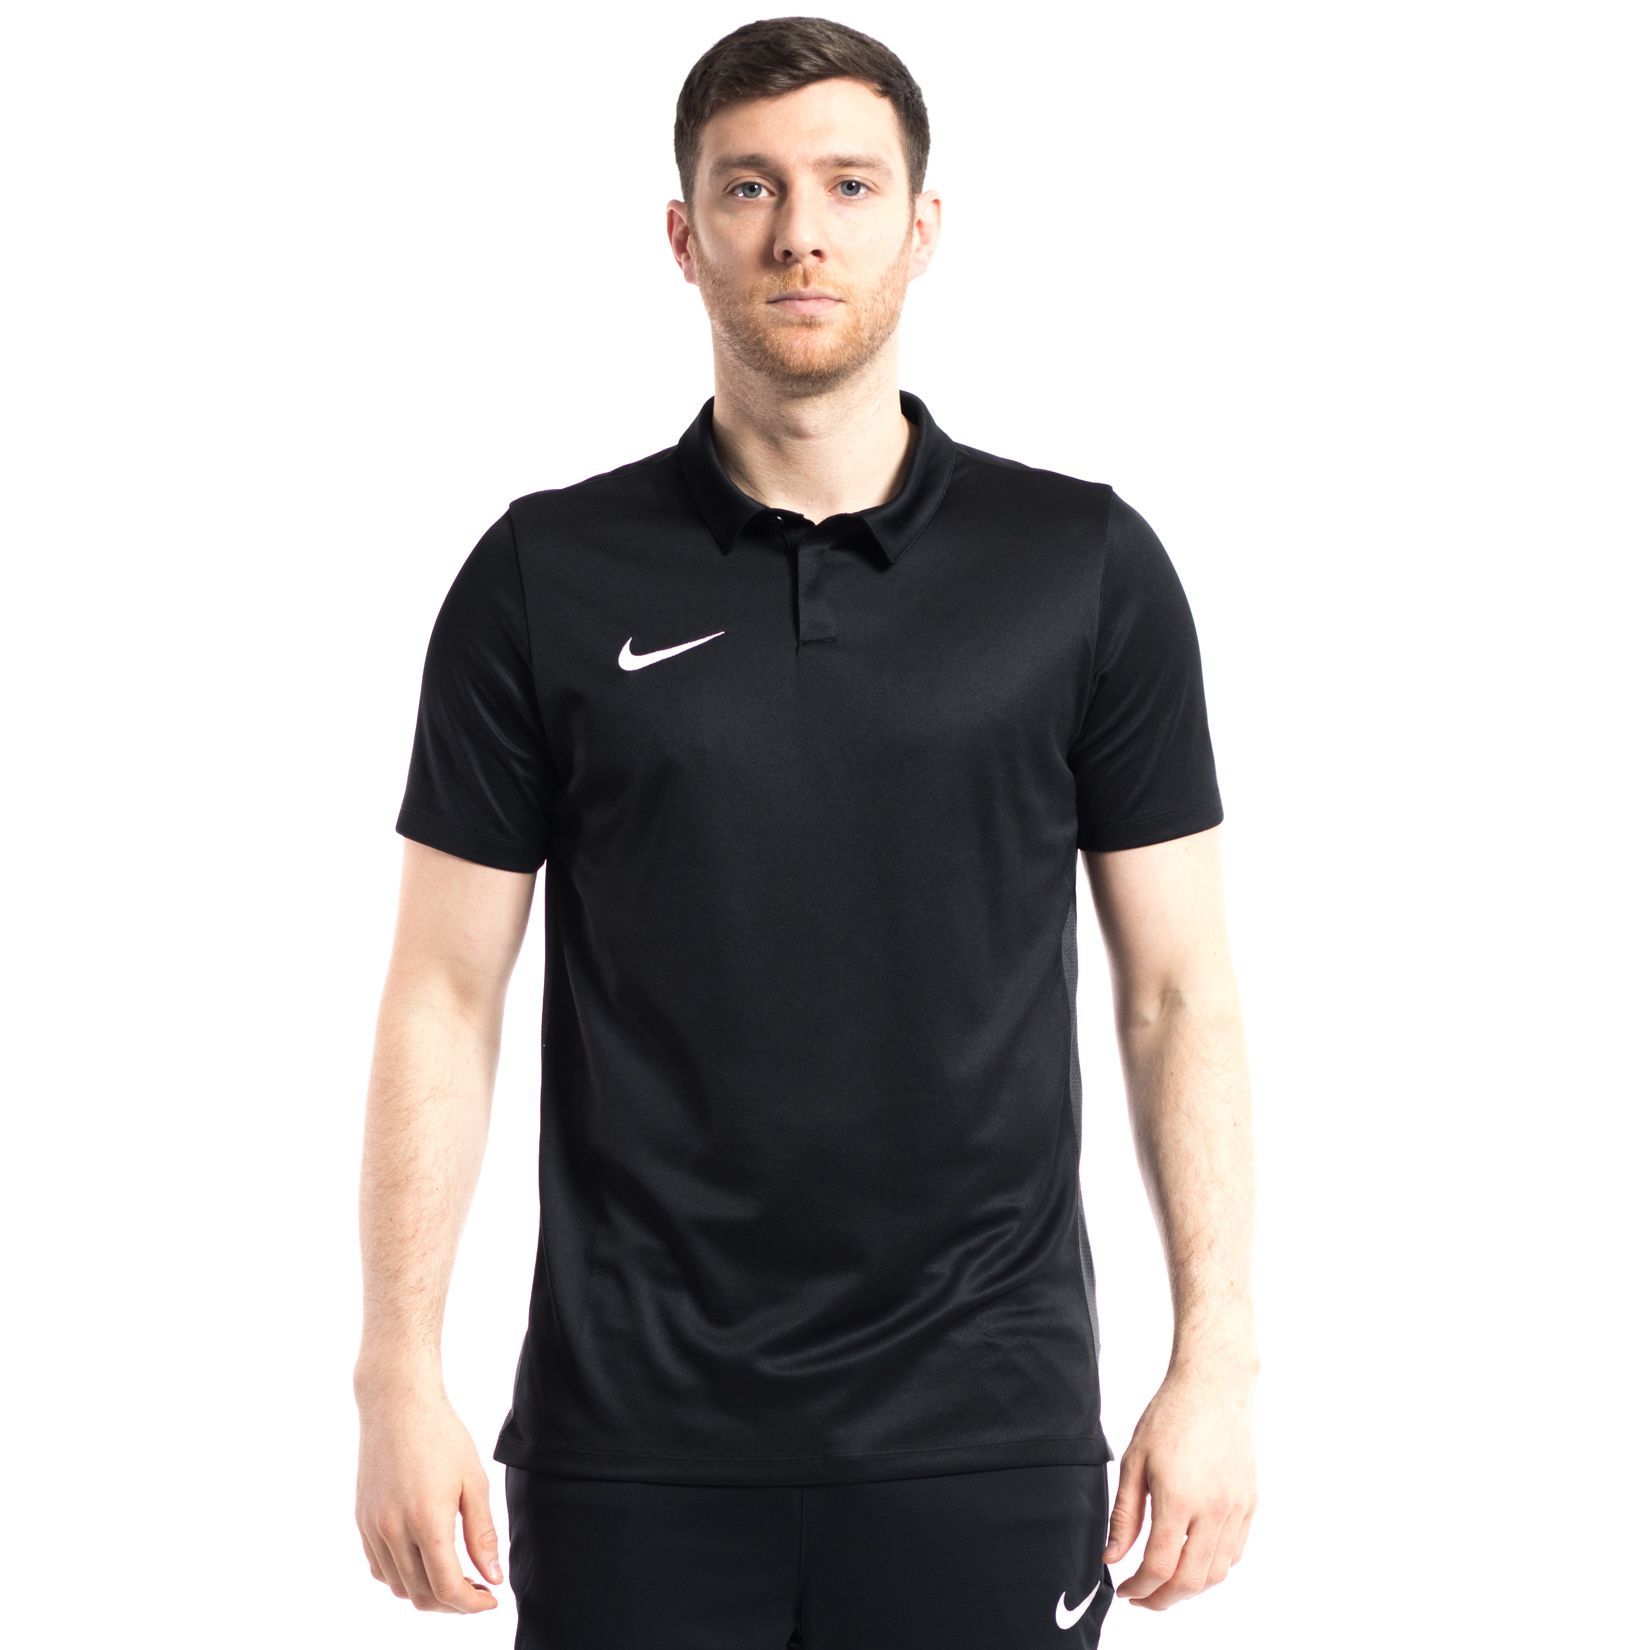 Nike Dry Academy 18 Polo Flash Sales, 60% OFF | ilikepinga.com